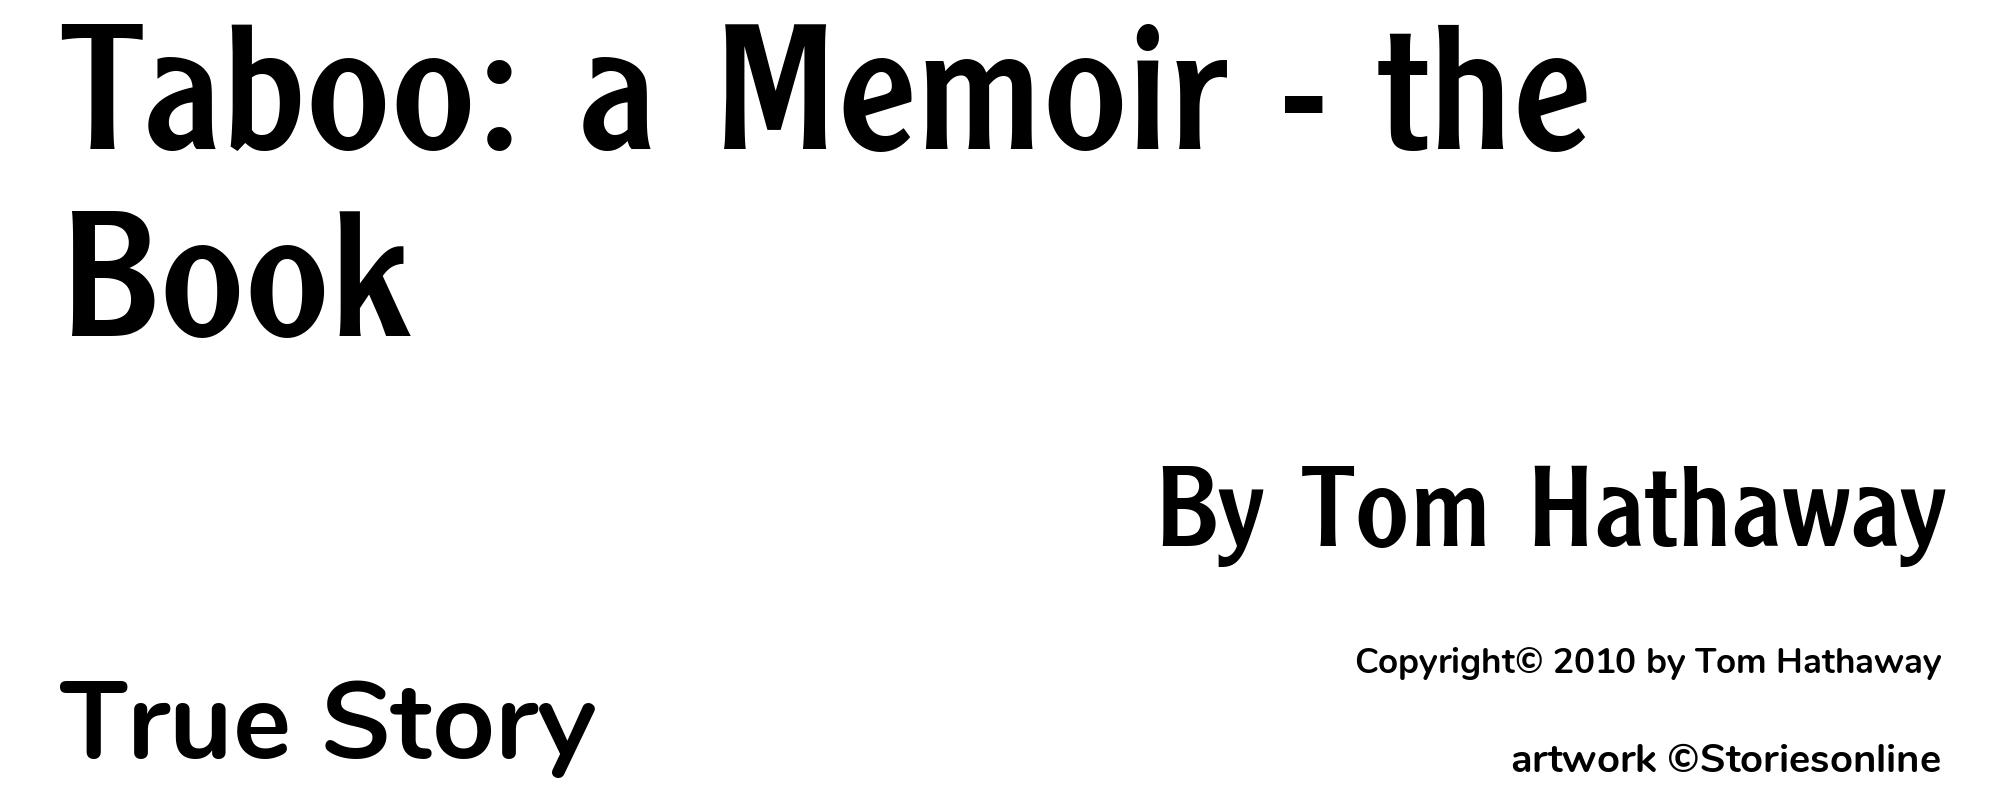 Taboo: a Memoir - the Book - Cover